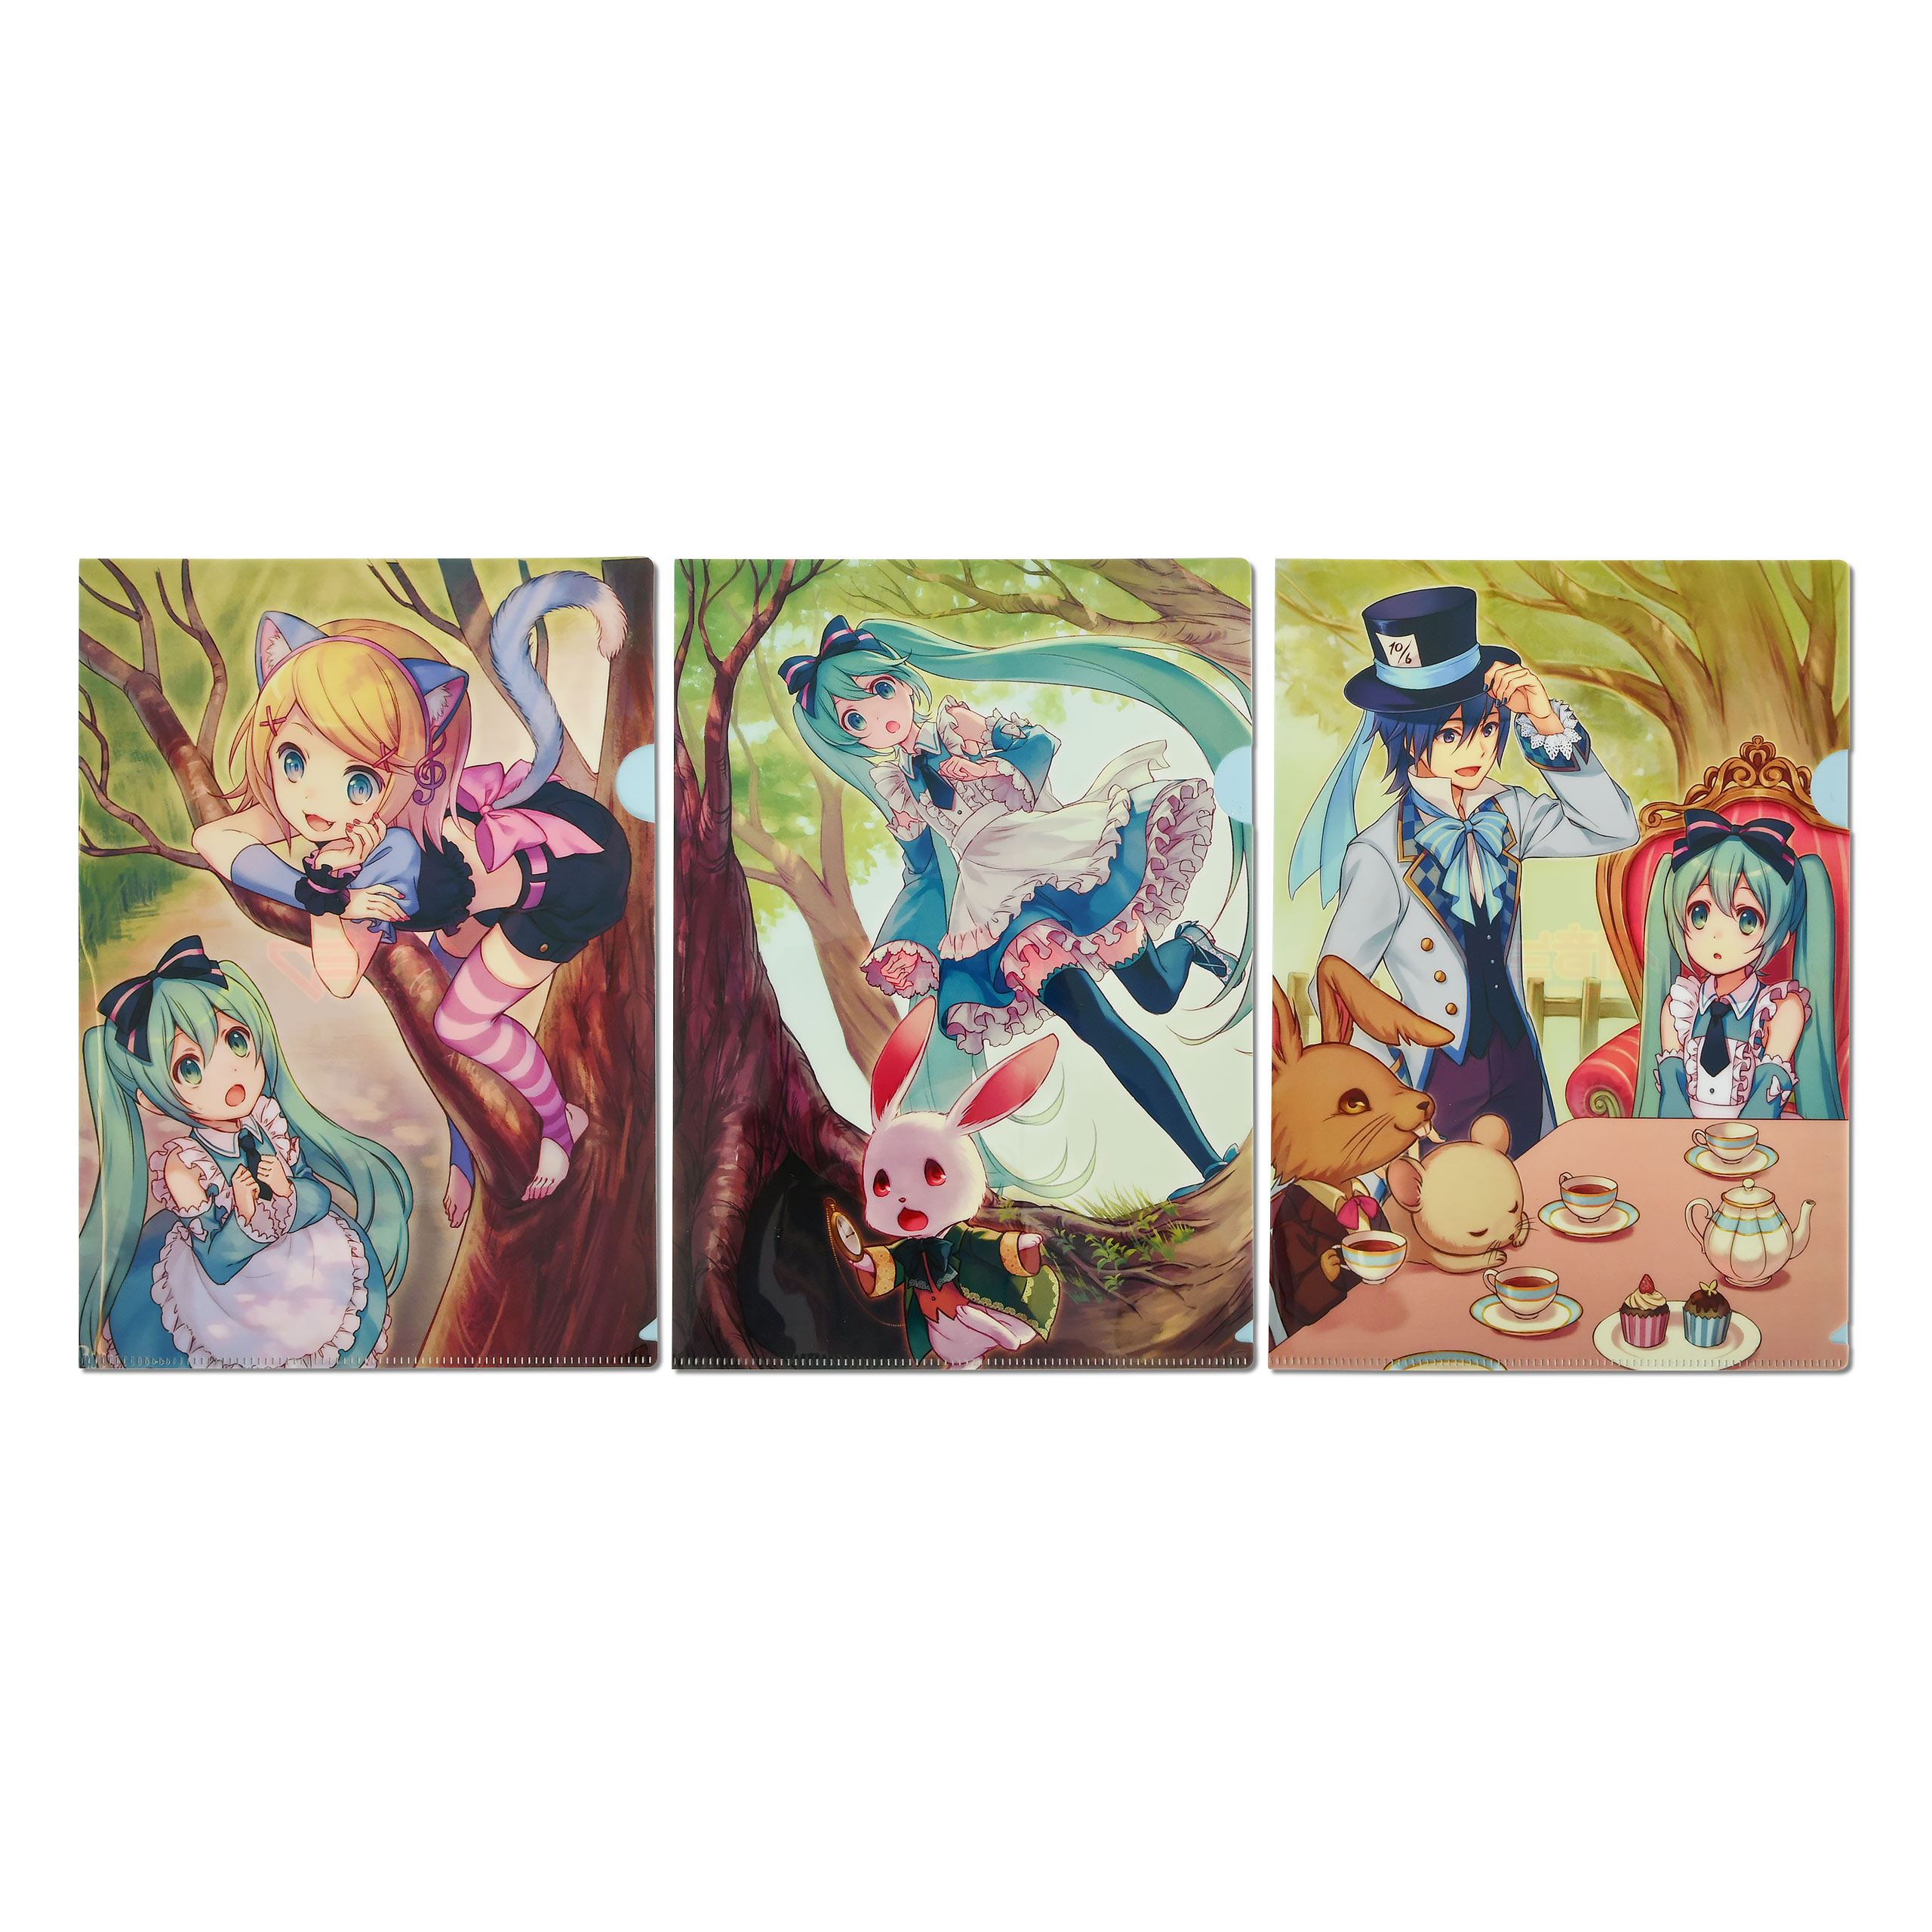 Vocaloid - Hatsune Miku Dokumentenhüllen 3er Set